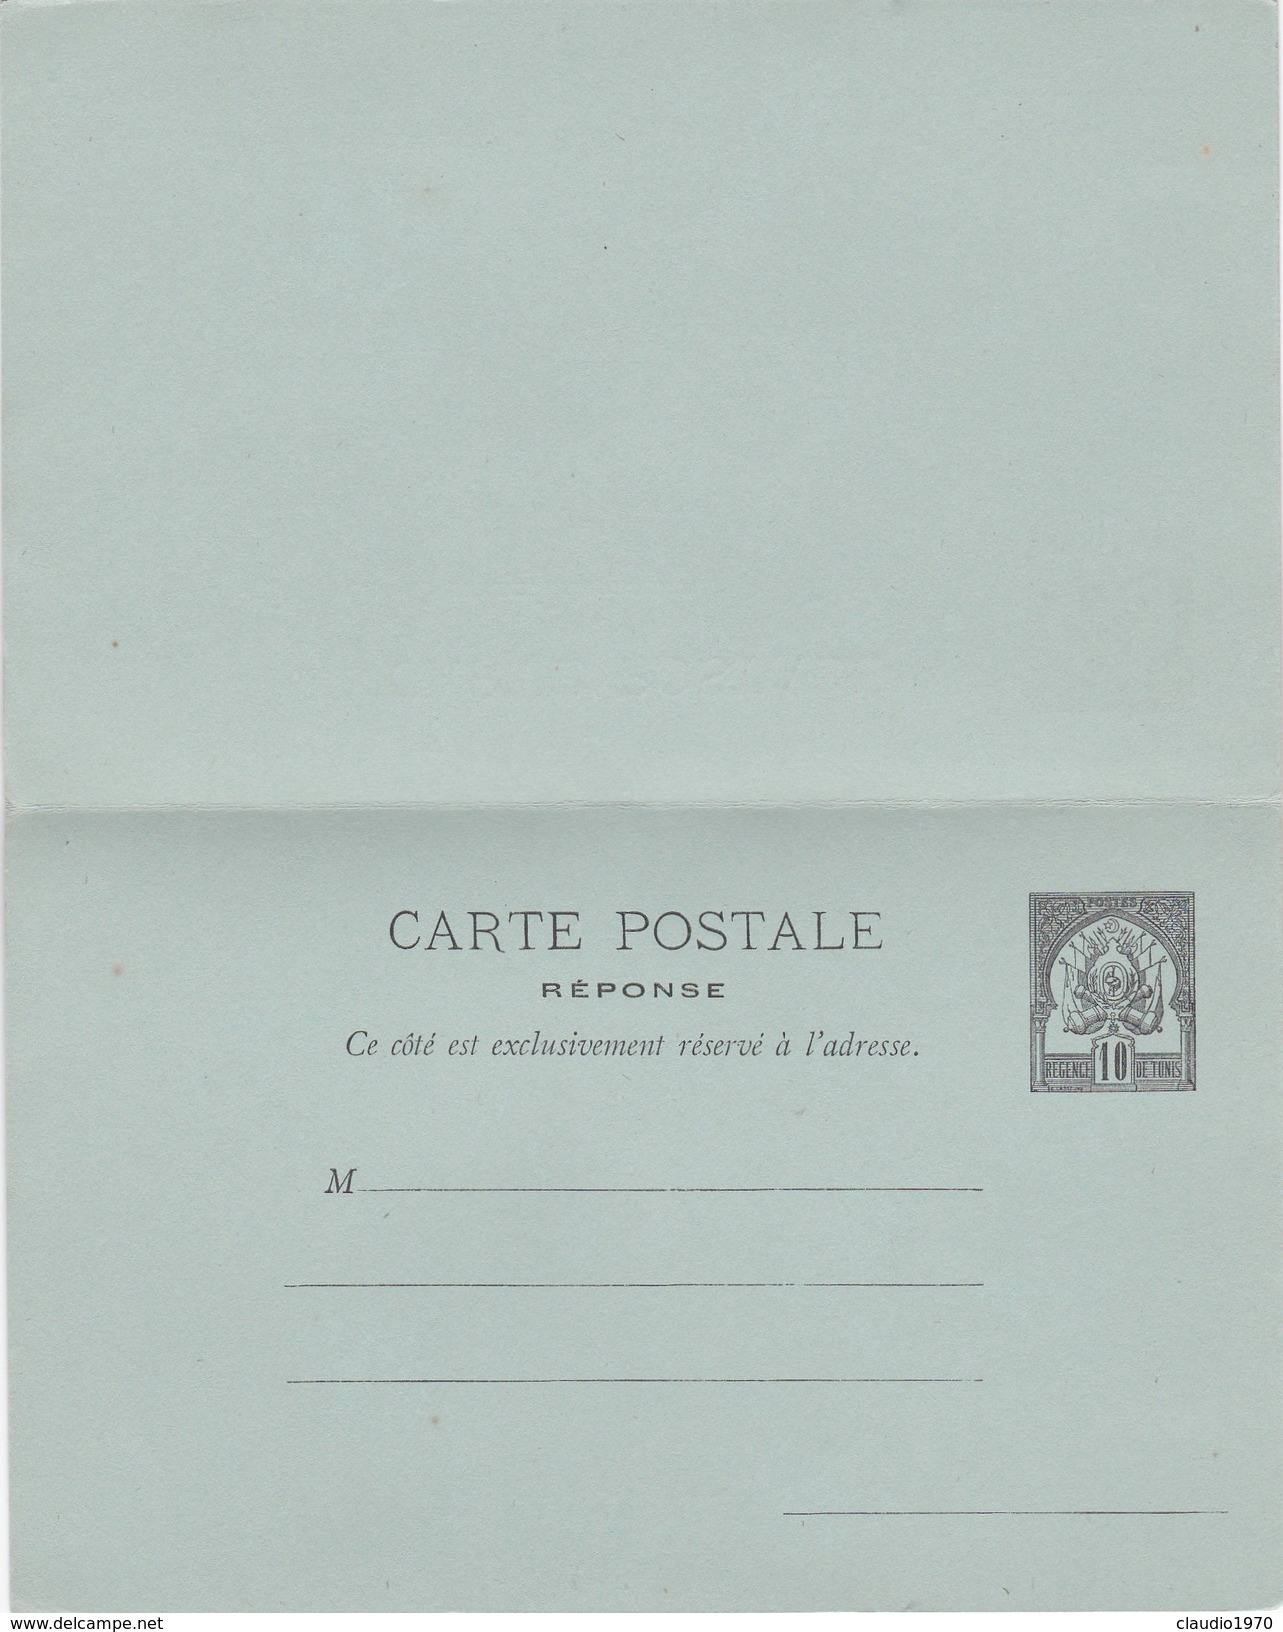 STORIA POSTALE  -   CARTE POSTALE - REGENCE 10 TUNIS - Tunisia (1956-...)